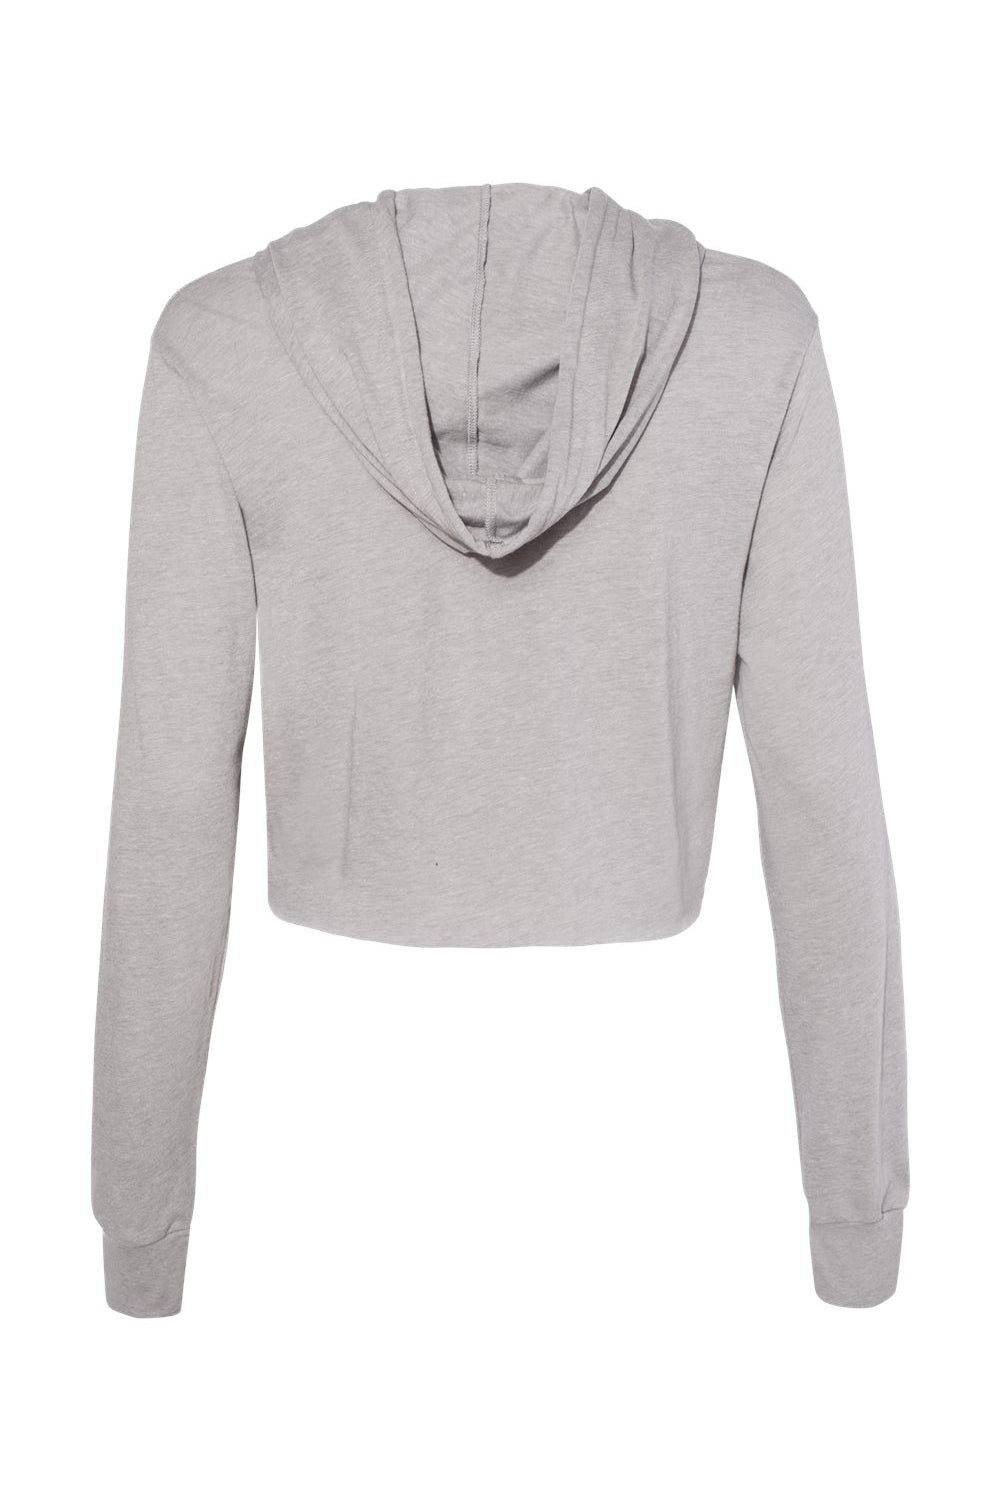 Bella + Canvas 8512 Womens Crop Long Sleeve Hooded Sweatshirt Hoodie Athletic Grey Flat Back